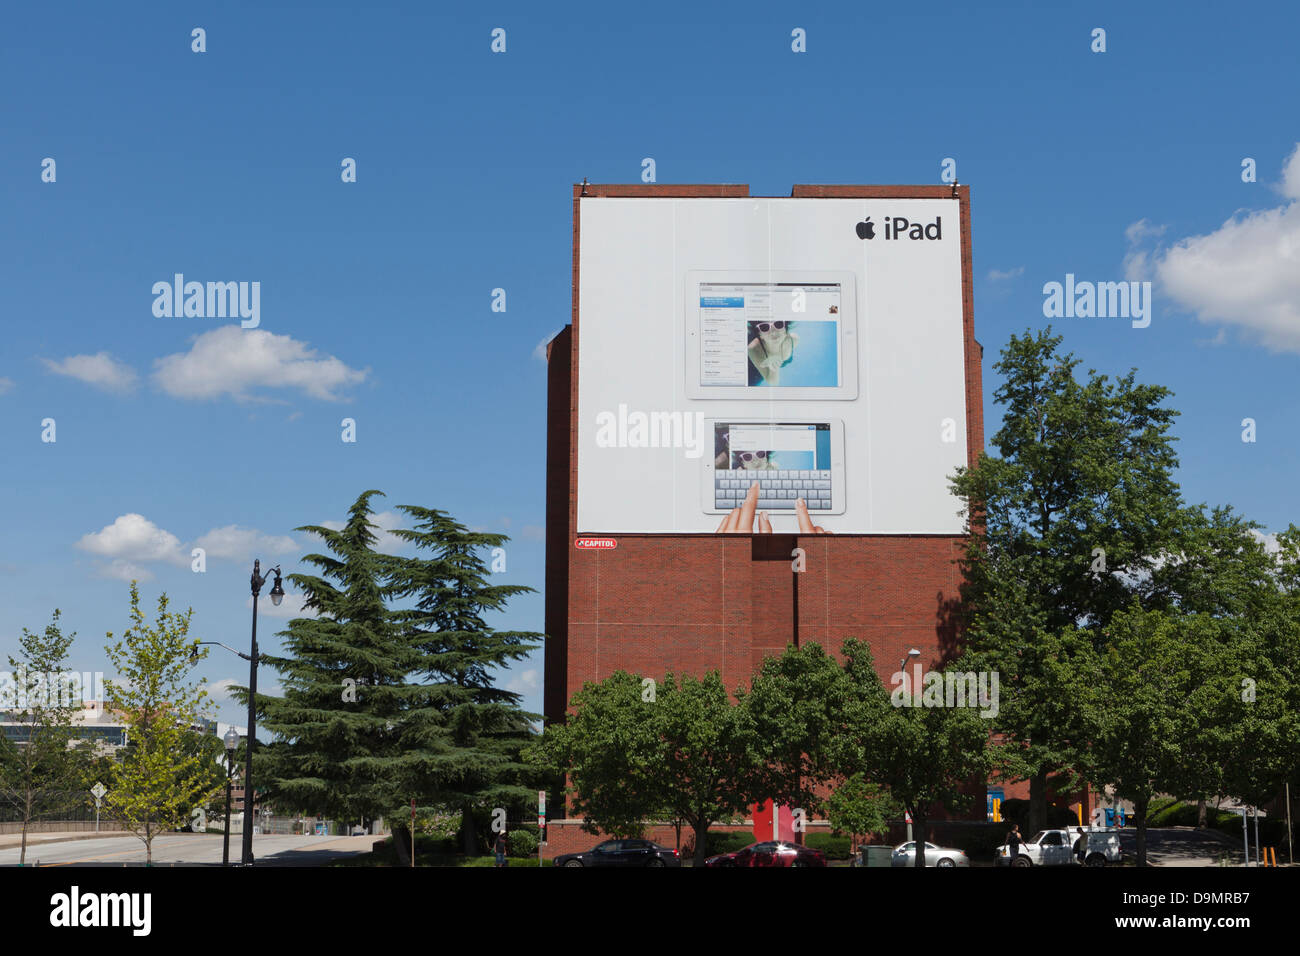 Apple-iPad-Anzeige auf Gebäude Stockfoto